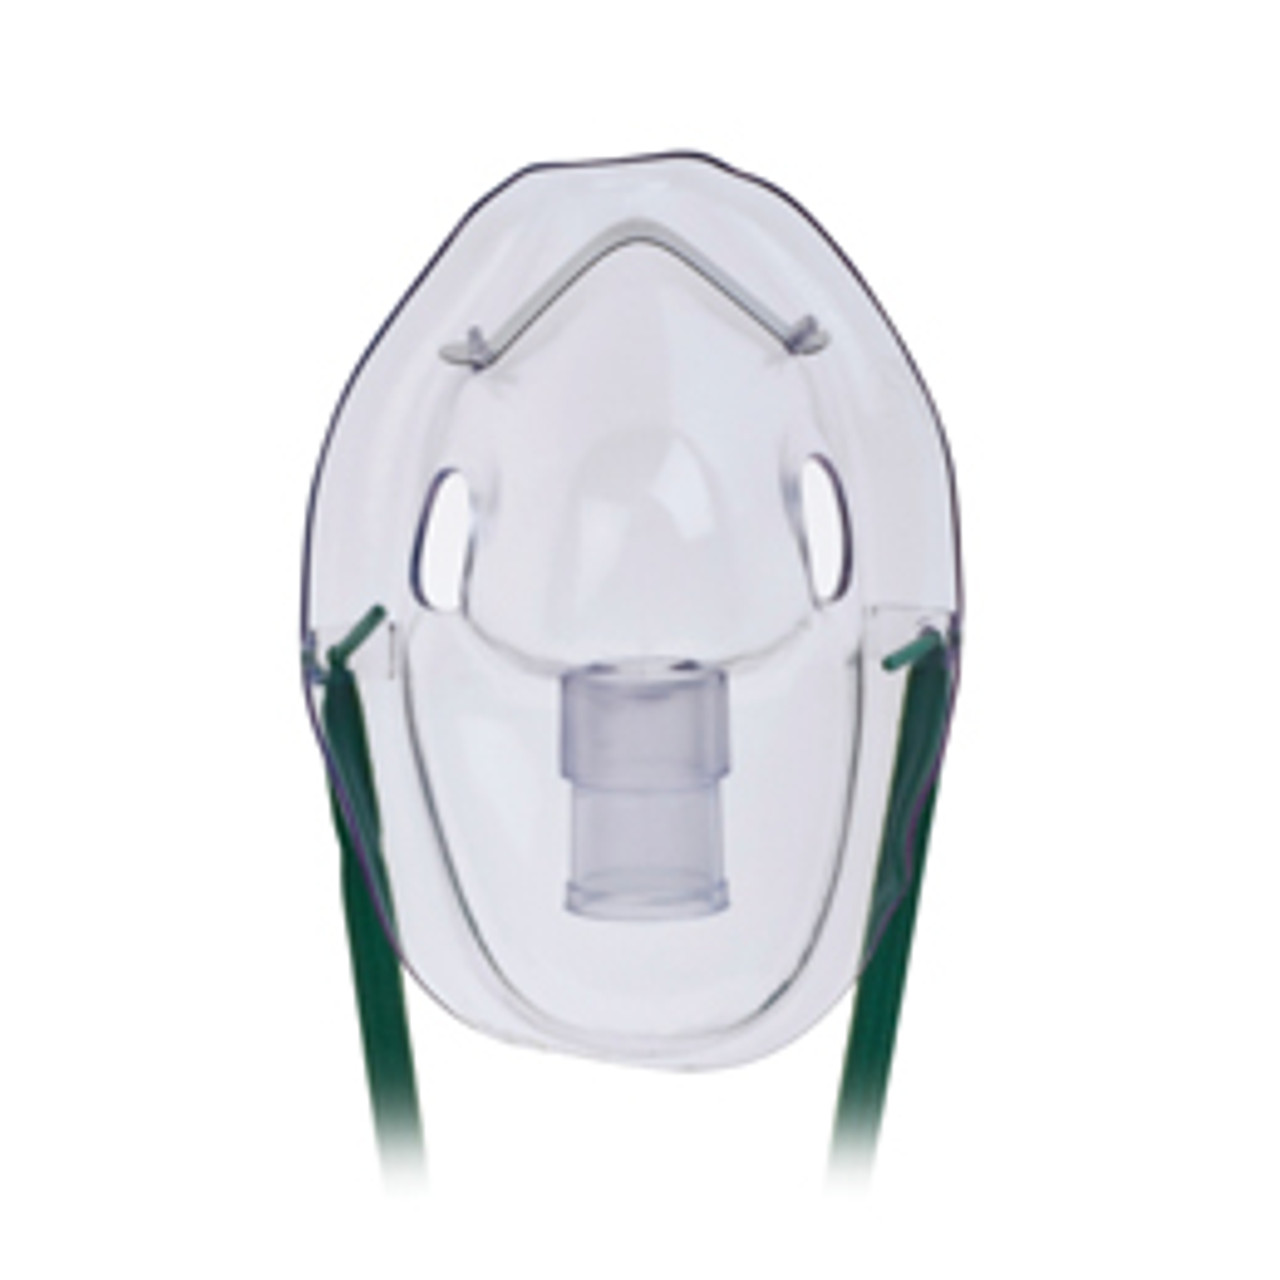 Hudson 1083 Teleflex Mask, Adult 50 Per Case - Medical